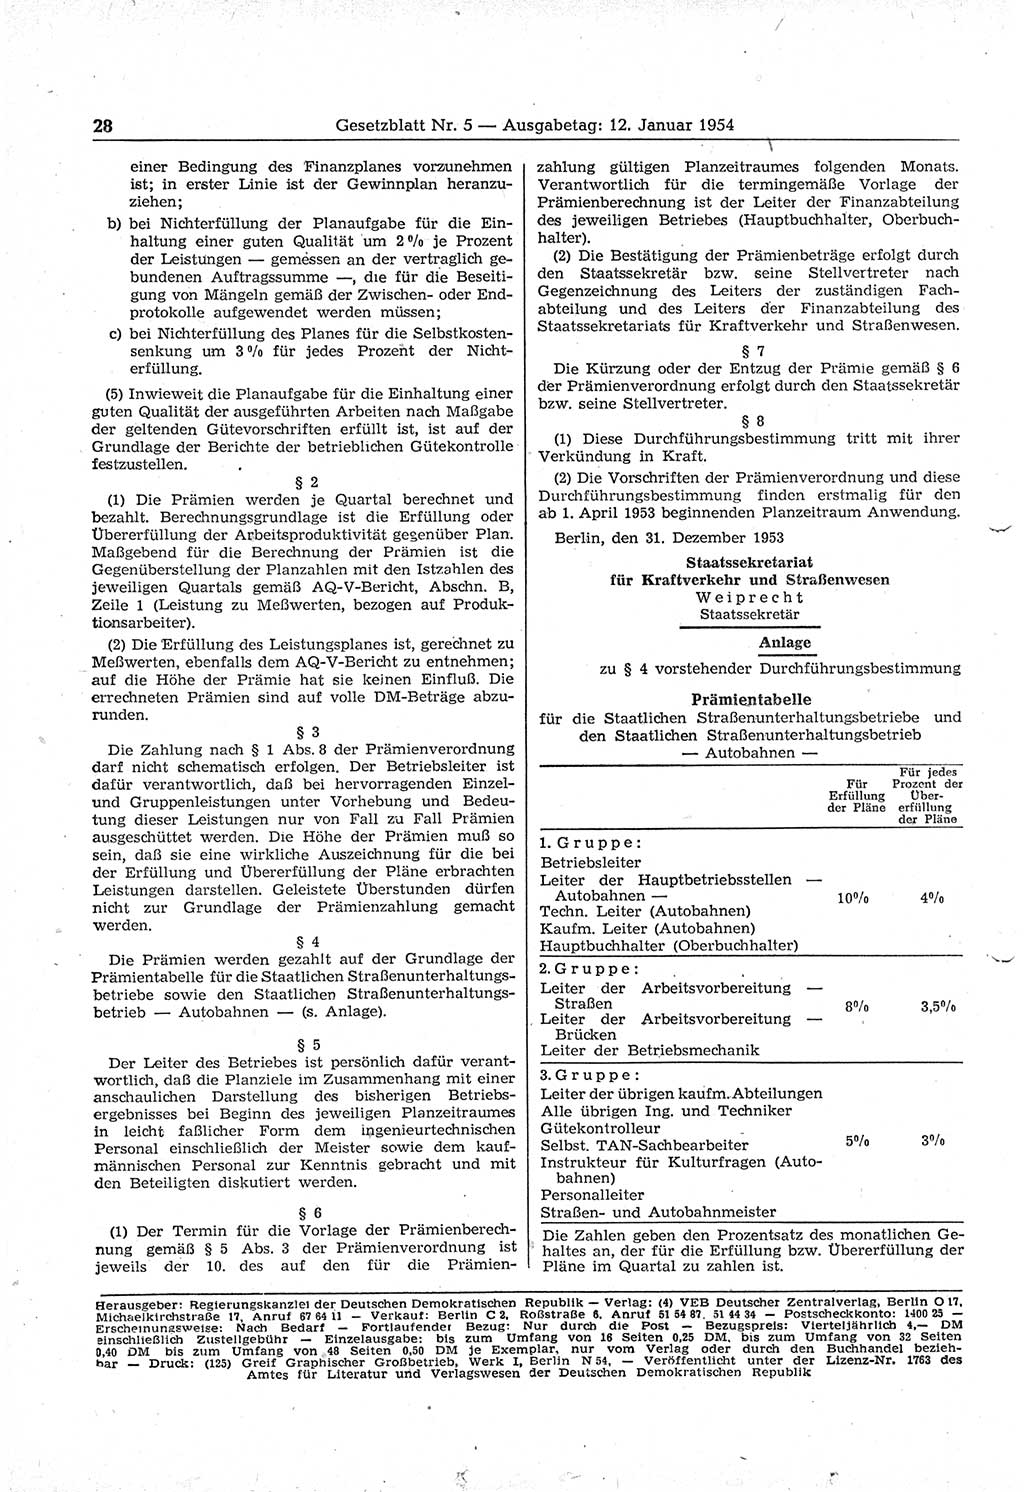 Gesetzblatt (GBl.) der Deutschen Demokratischen Republik (DDR) 1954, Seite 28 (GBl. DDR 1954, S. 28)